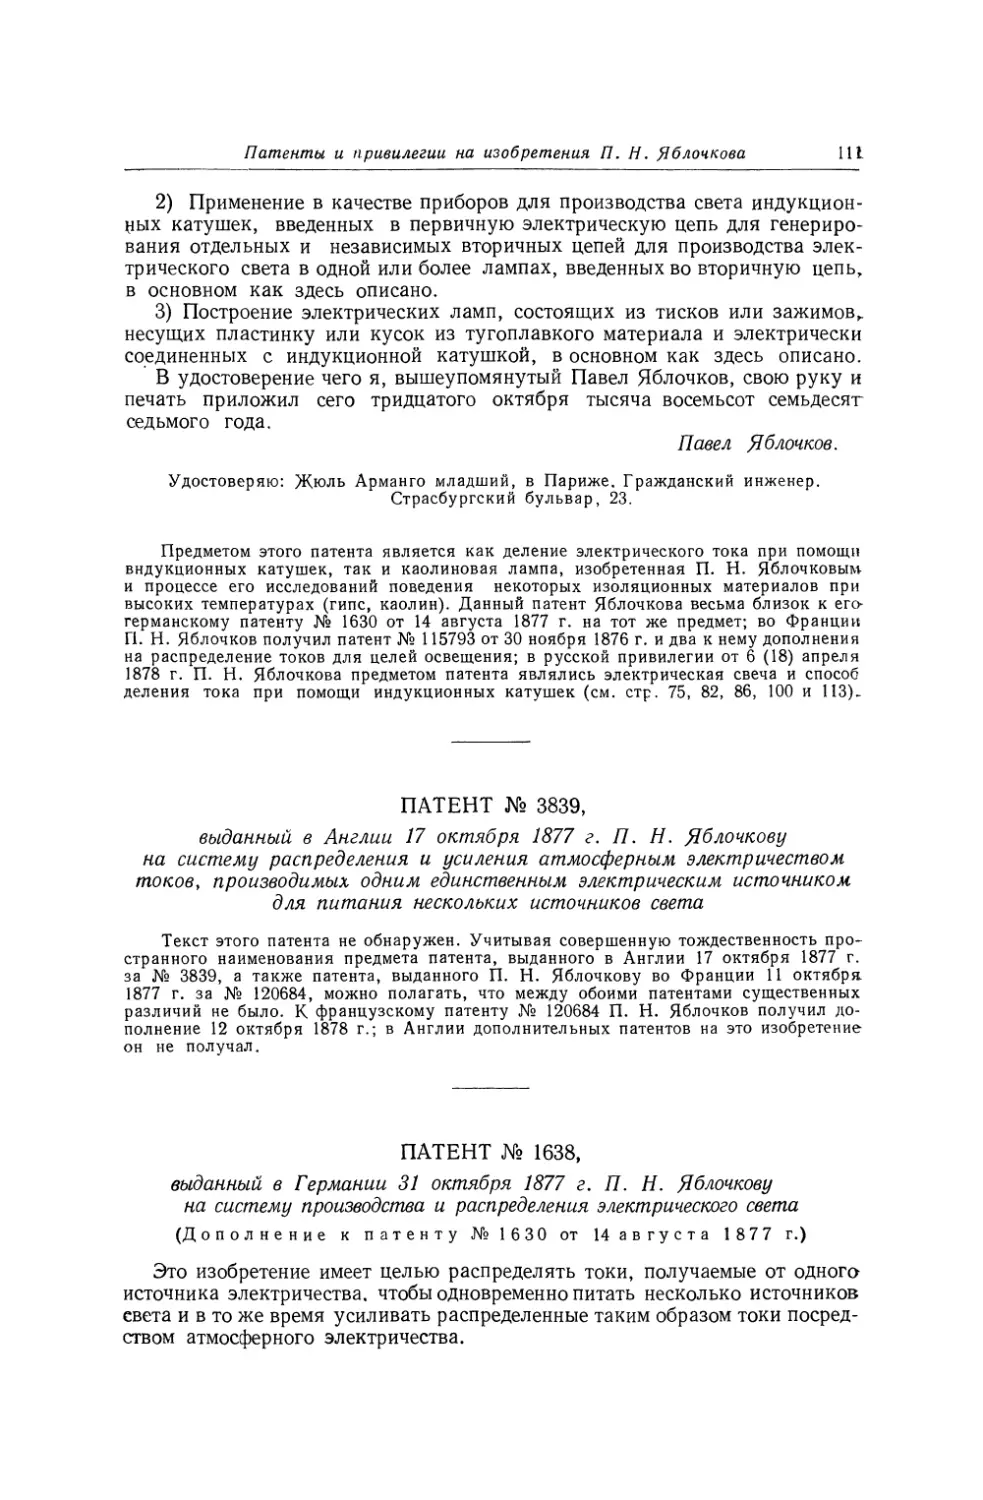 Патент № 3839, выданный в Англии 17 октября 1877 г. П. Н. Яблочкову на систему распределения и усиления атмосферным электричеством токов, производимых одним единственным электрическим источником для питания нескольких источников света